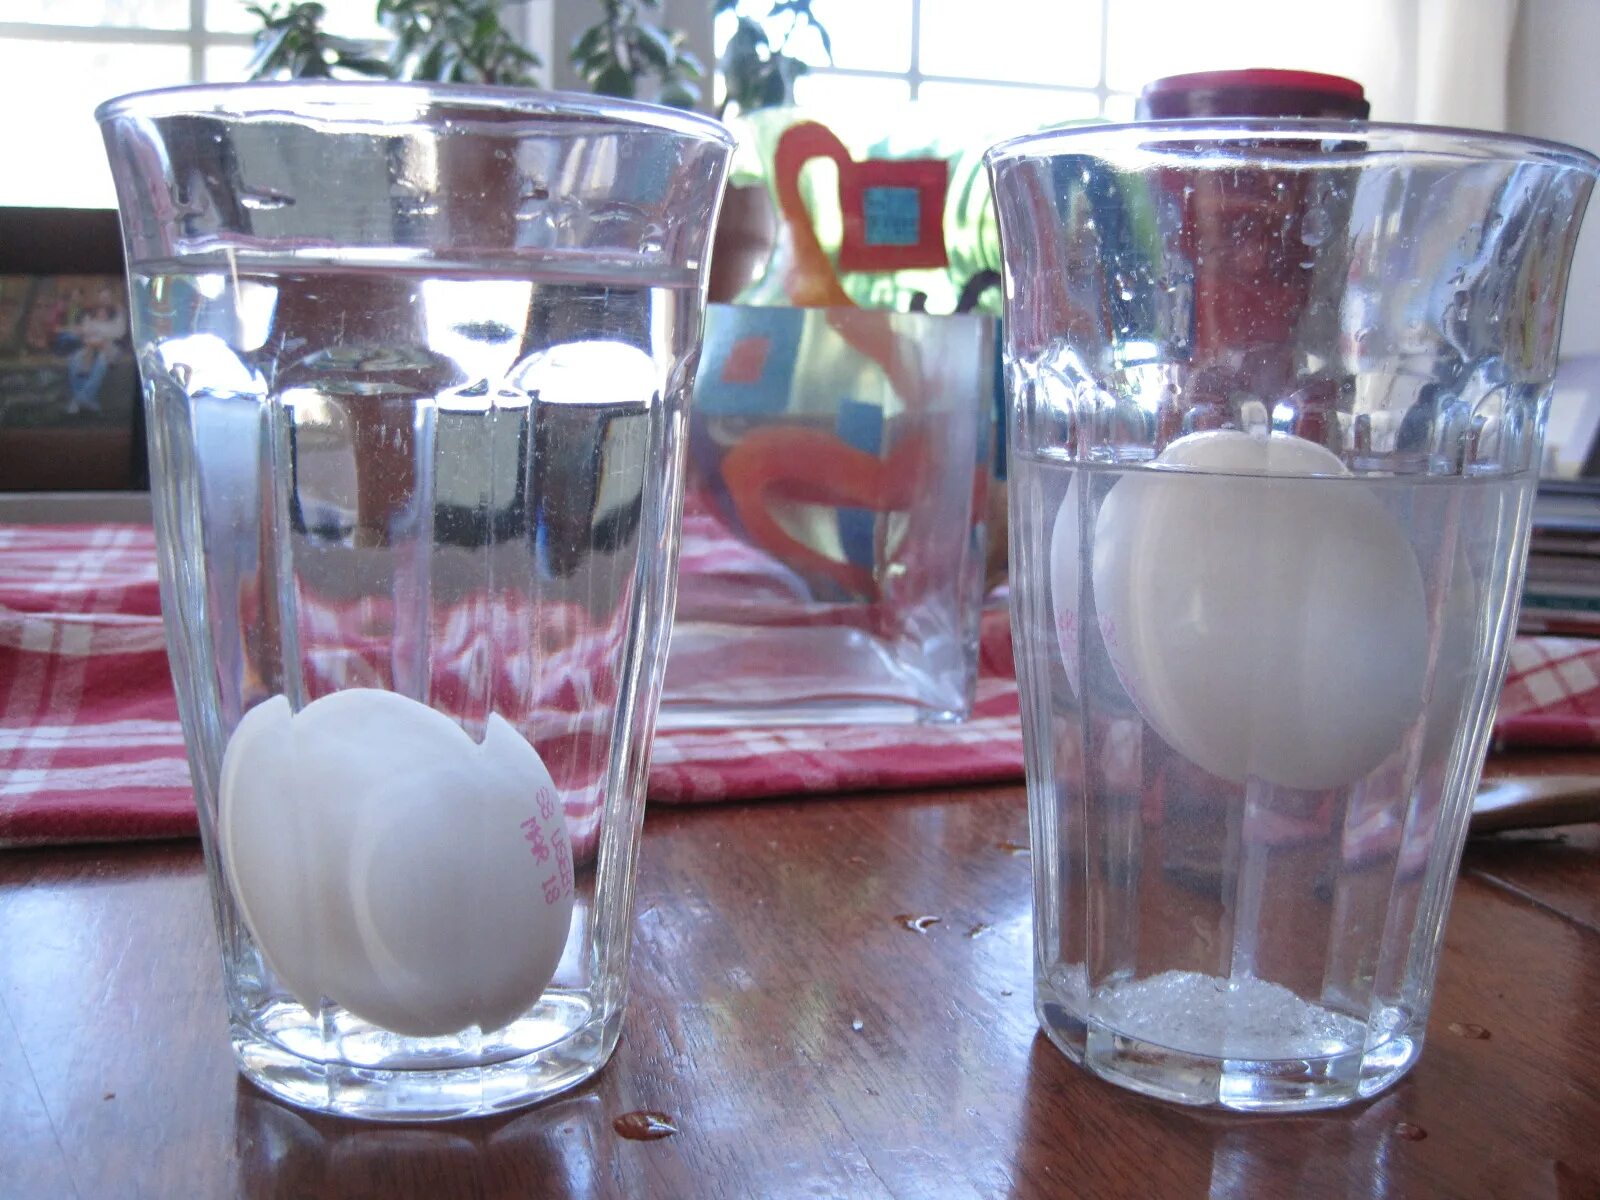 Опыт с яйцом и соленой водой. Опыты с яйцом. Опыт с водой и яйцом и солью. Эксперимент с яйцом и водой.